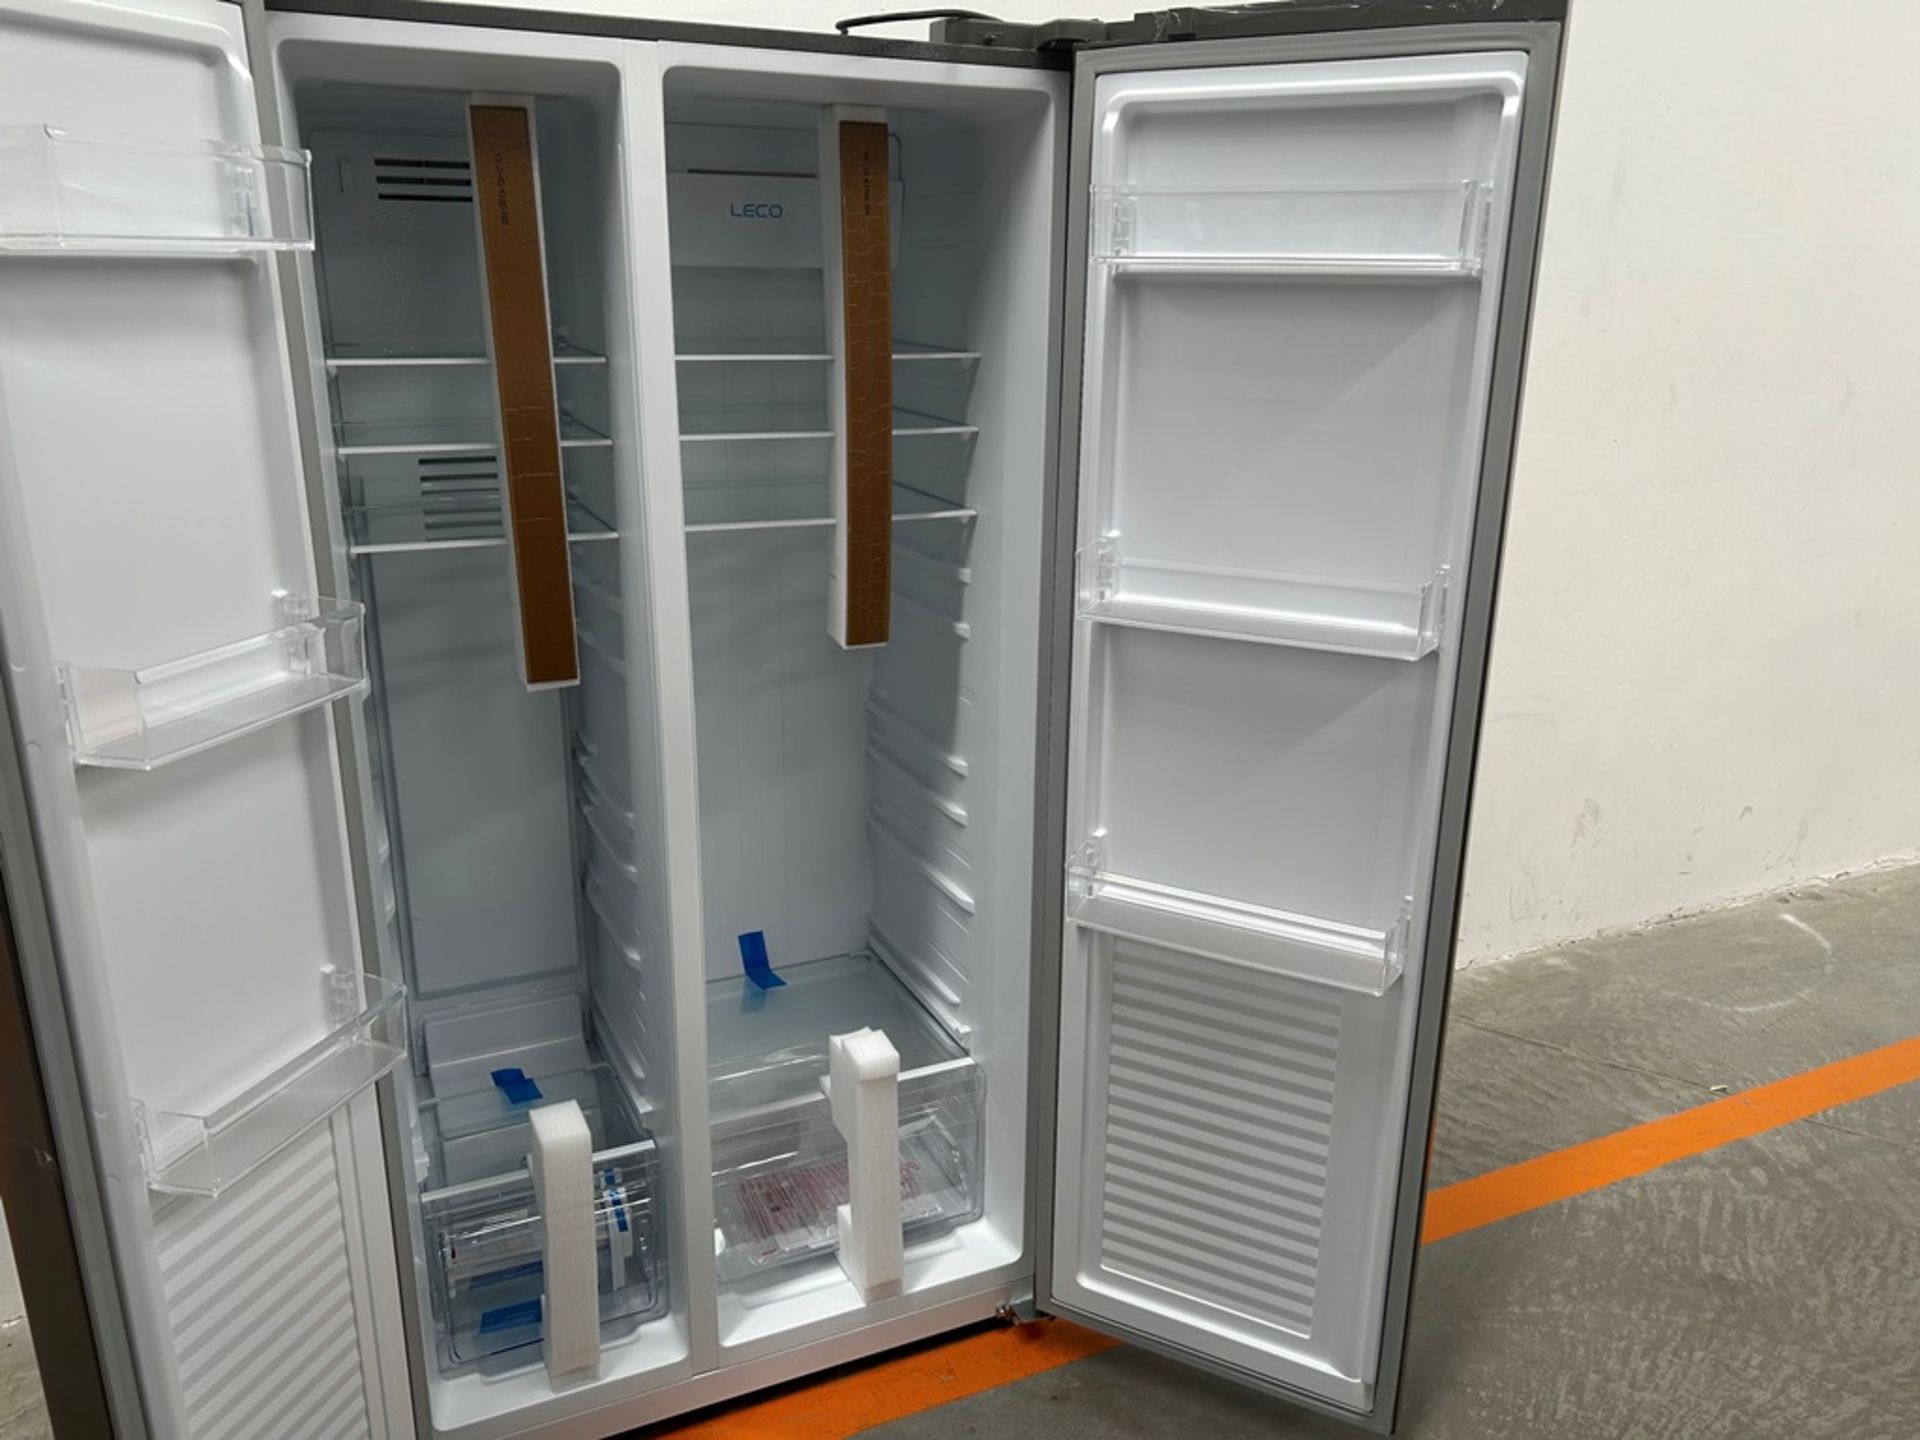 Refrigerador Marca OSTER Modelo OSSBSMV20SSEVI, Serie 030121, Color GRIS (Favor de inspeccionar) - Image 6 of 12